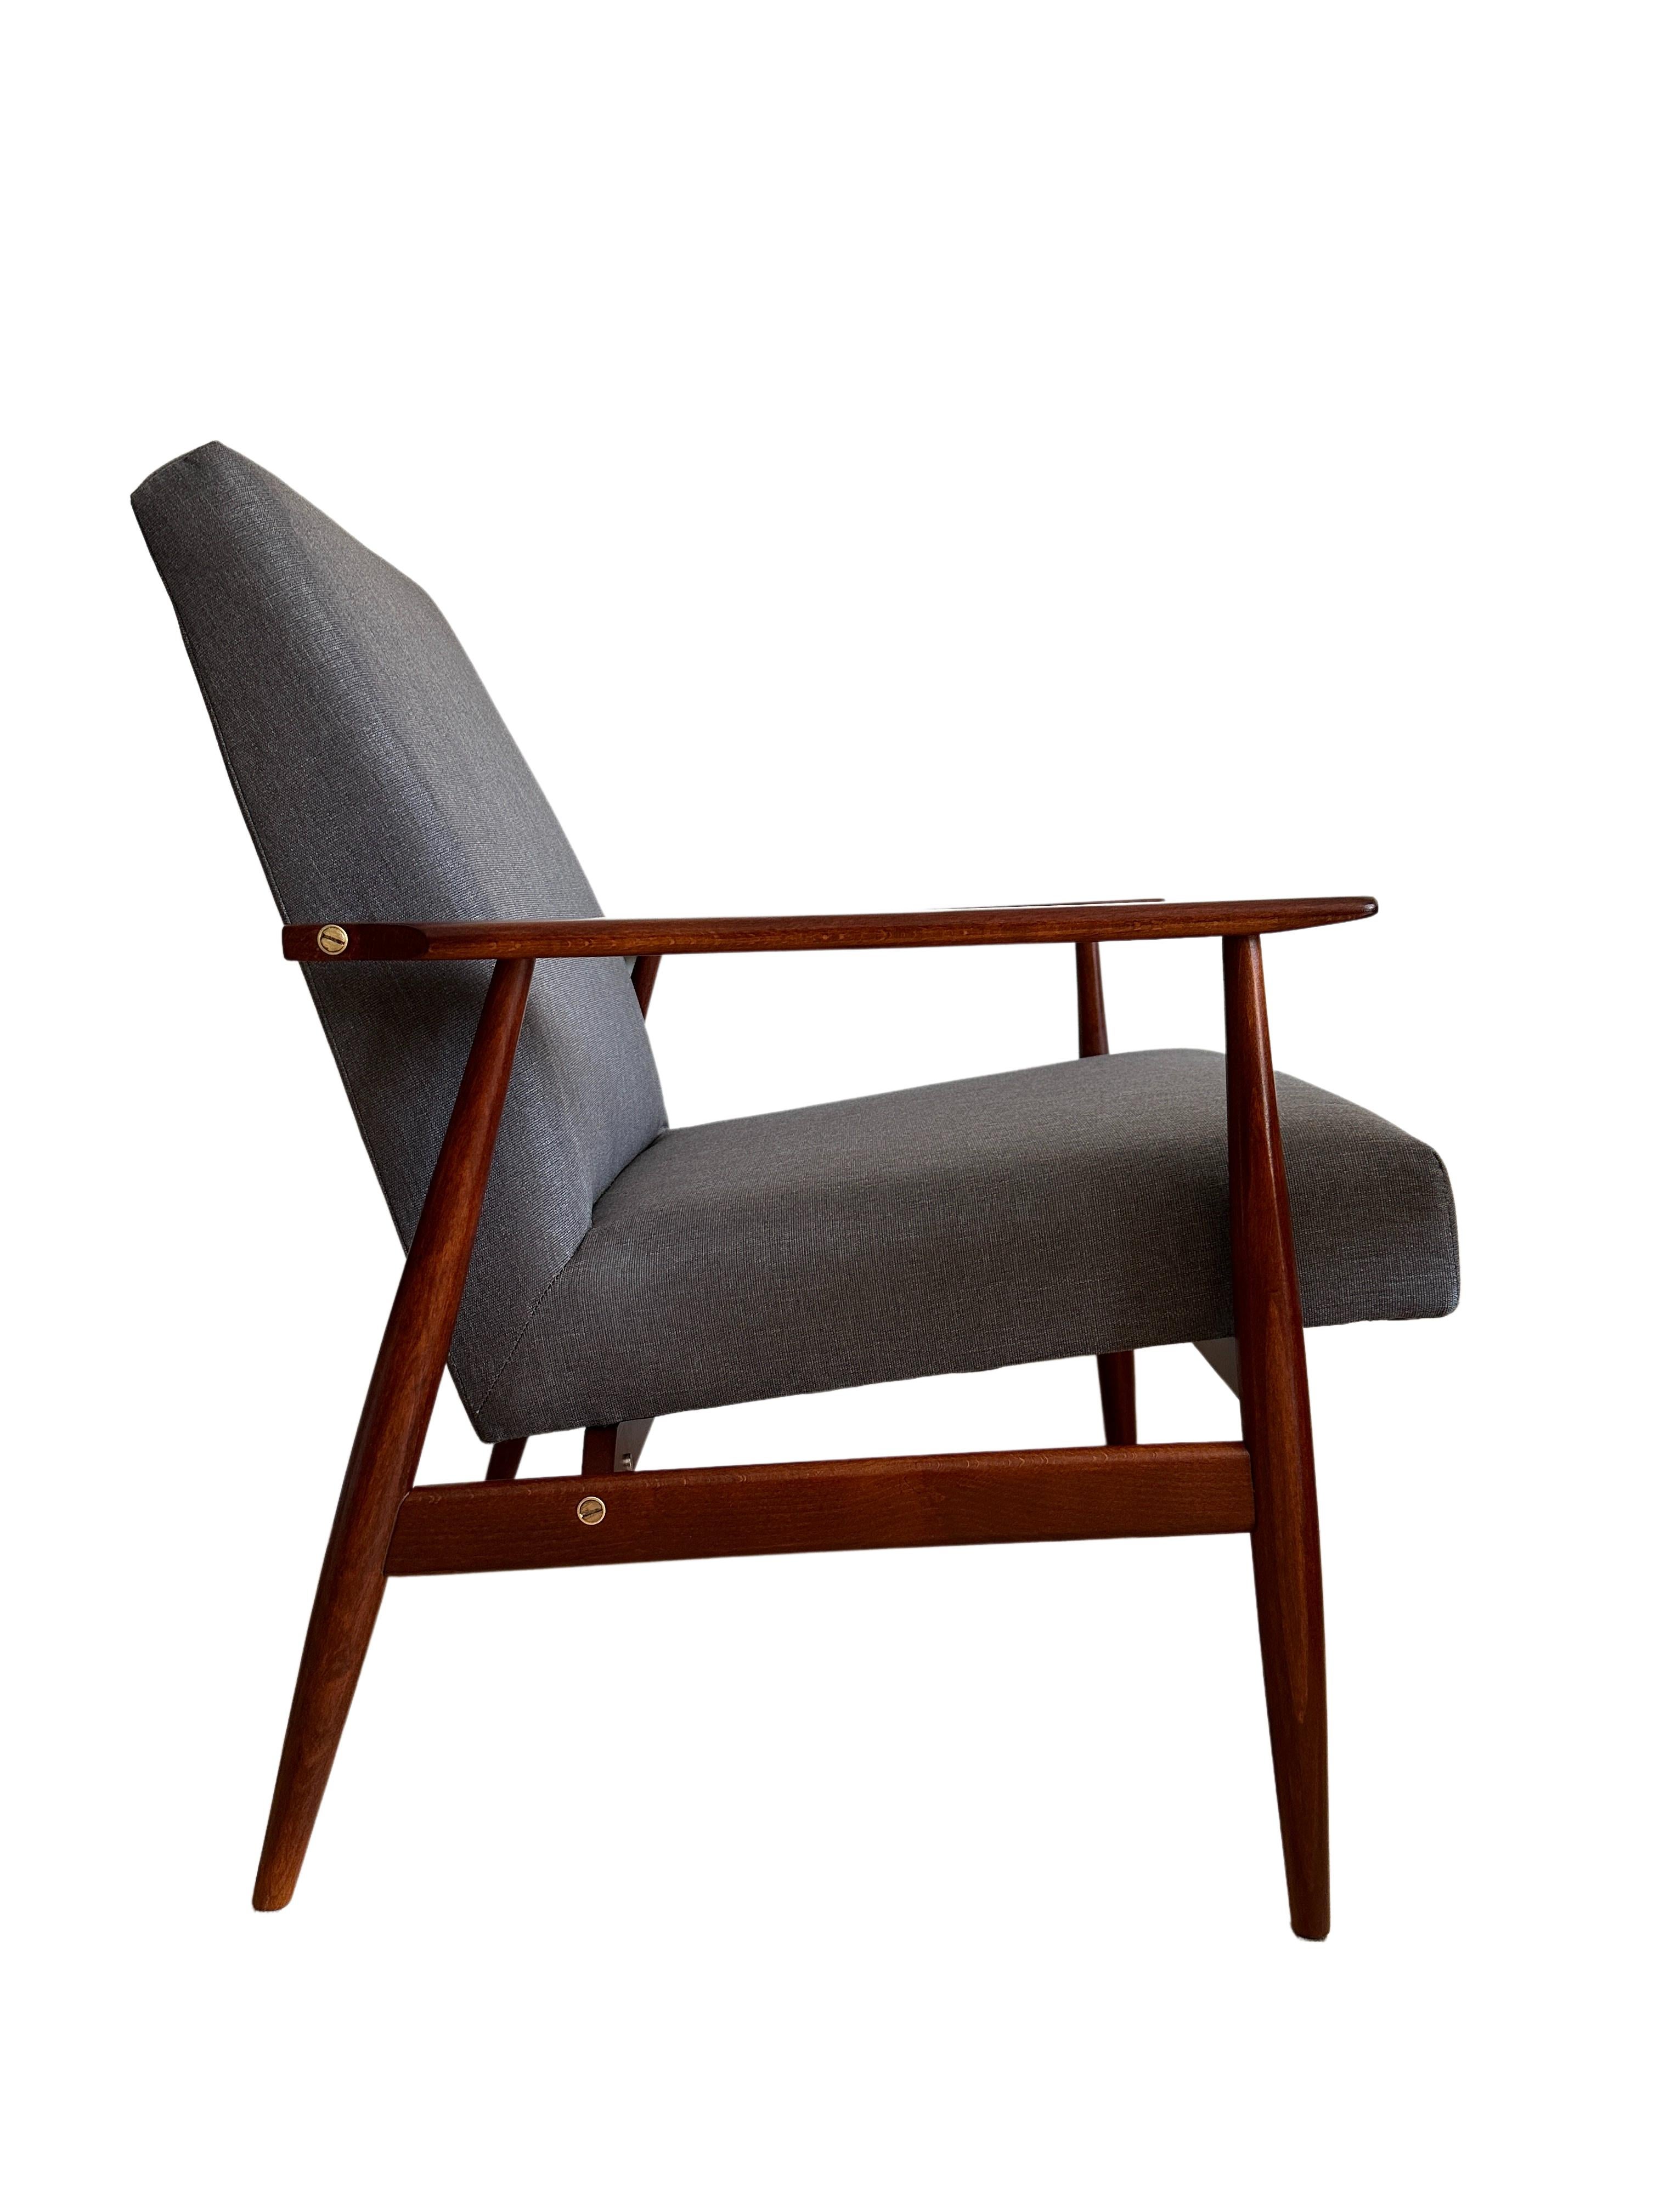 Sessel aus der Mitte des Jahrhunderts, entworfen von Henryk Lis in den 1960er Jahren. 

Die Struktur besteht aus Buchenholz in einer warmen Farbe, die mit einem halbmatten, satinierten Lack überzogen ist. Der Bezug ist ein schwerer, hochwertiger